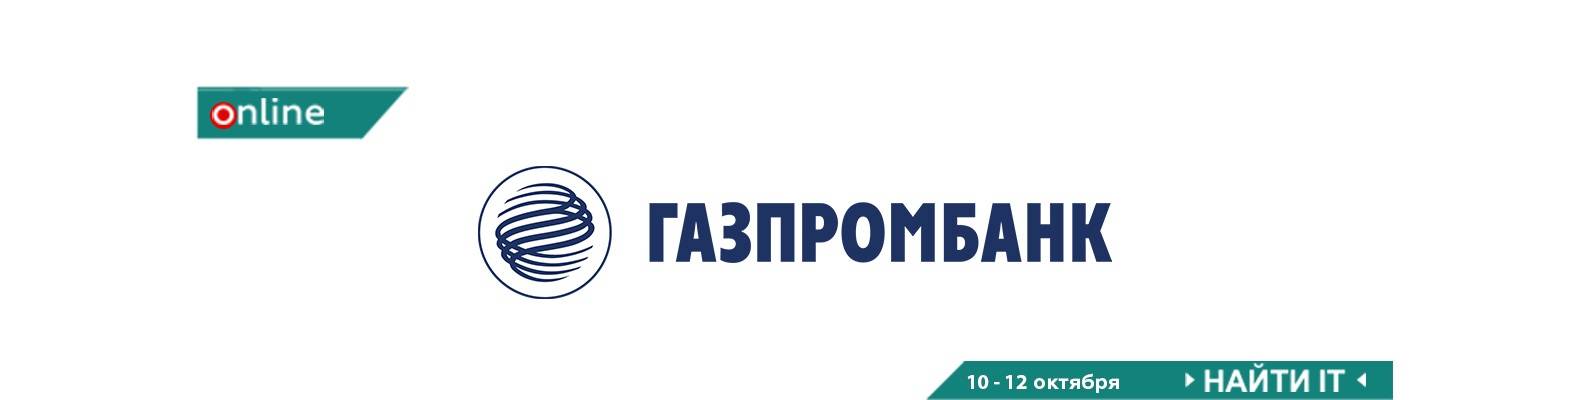 Ипотека в газпромбанке: какие аккредитованные страховые компании гарантируют безопасность сделки? - urcrimea.ru